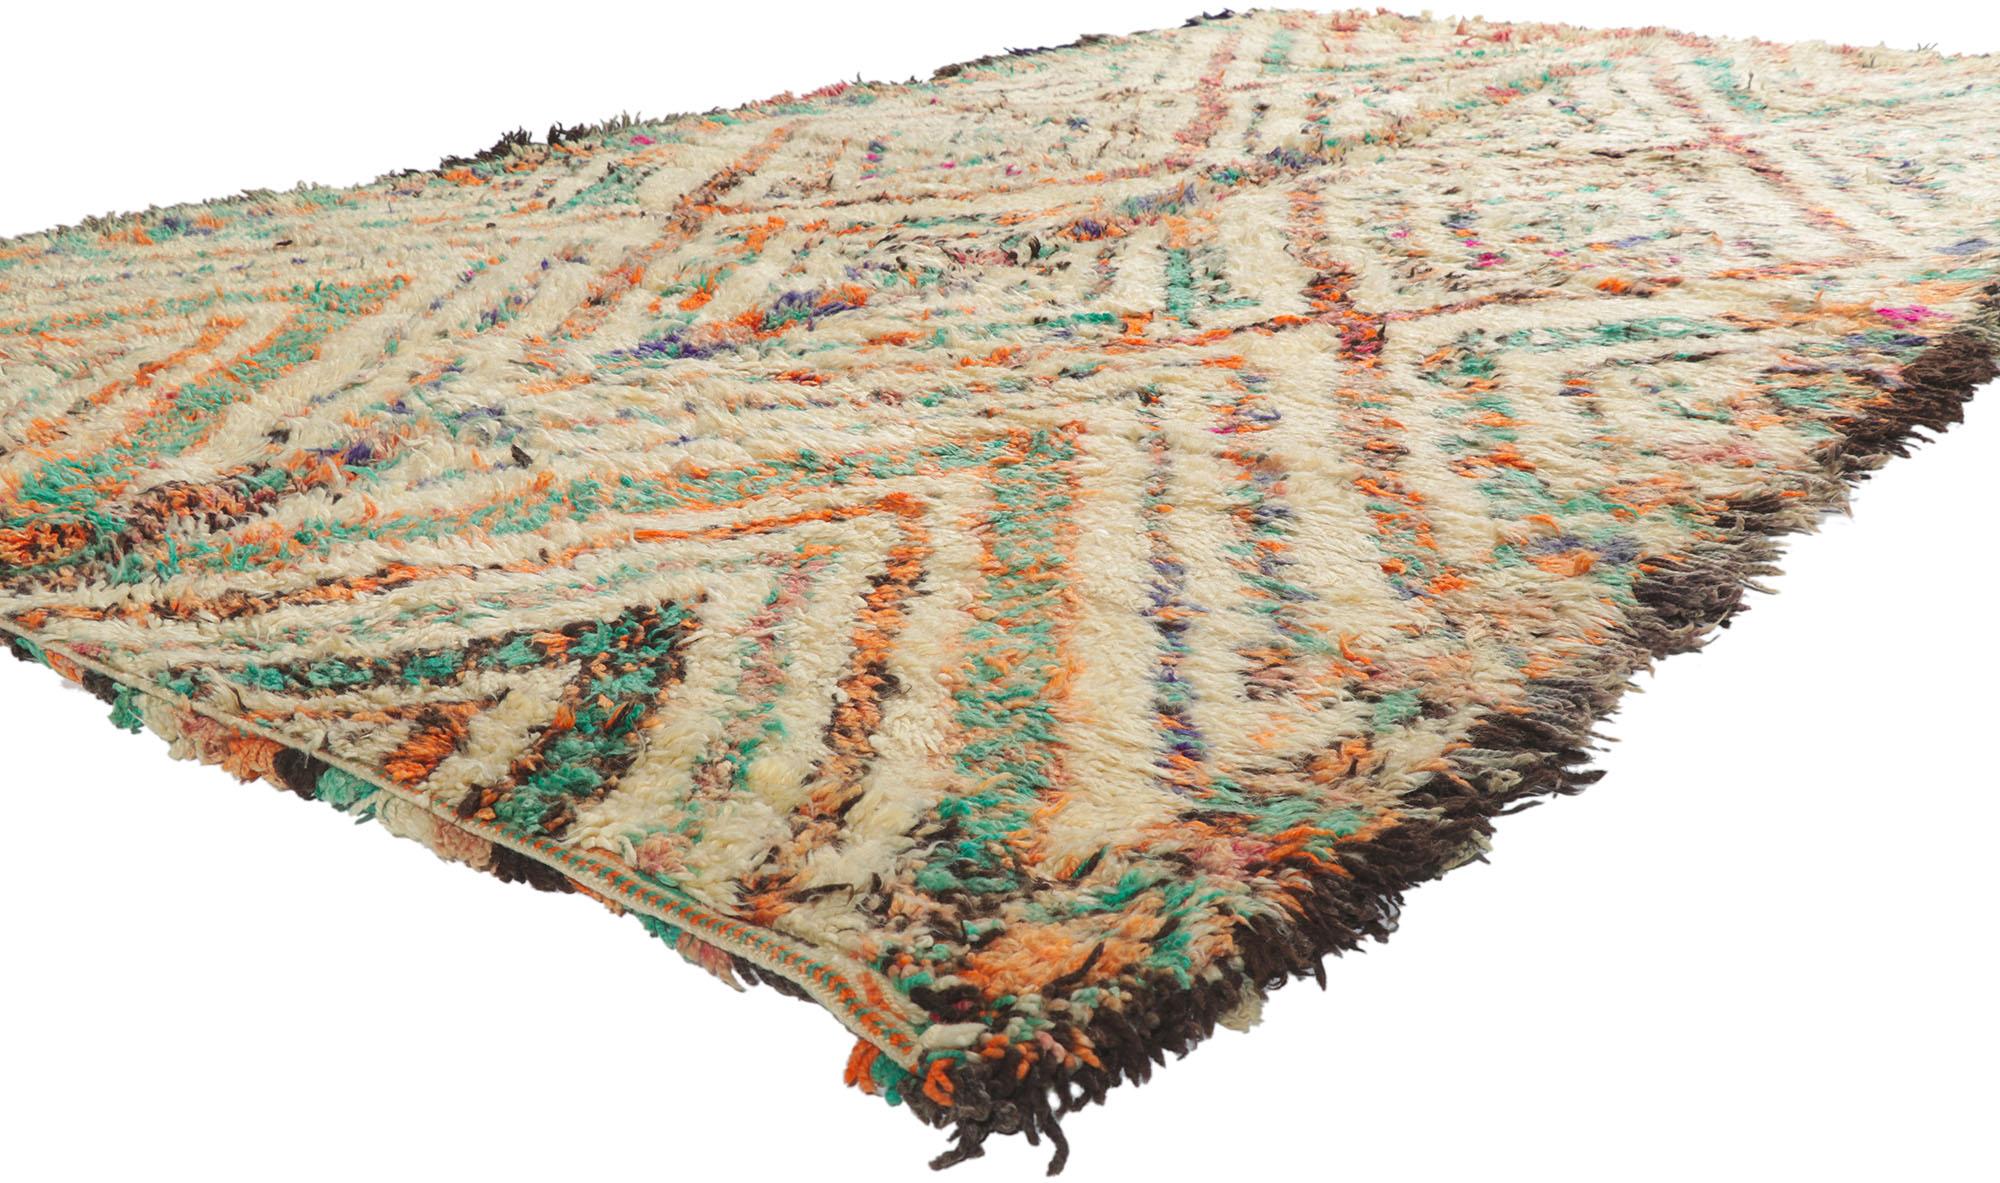 21404 Vintage Berber Marokkanische Beni M'Guild Teppich 06'06 x 11'08. mit seinem Rautengitter, unglaublichen Details und Textur ist dieser handgeknüpfte marokkanische Vintage-Berberteppich Beni Ourain eine fesselnde Vision von gewebter Schönheit.